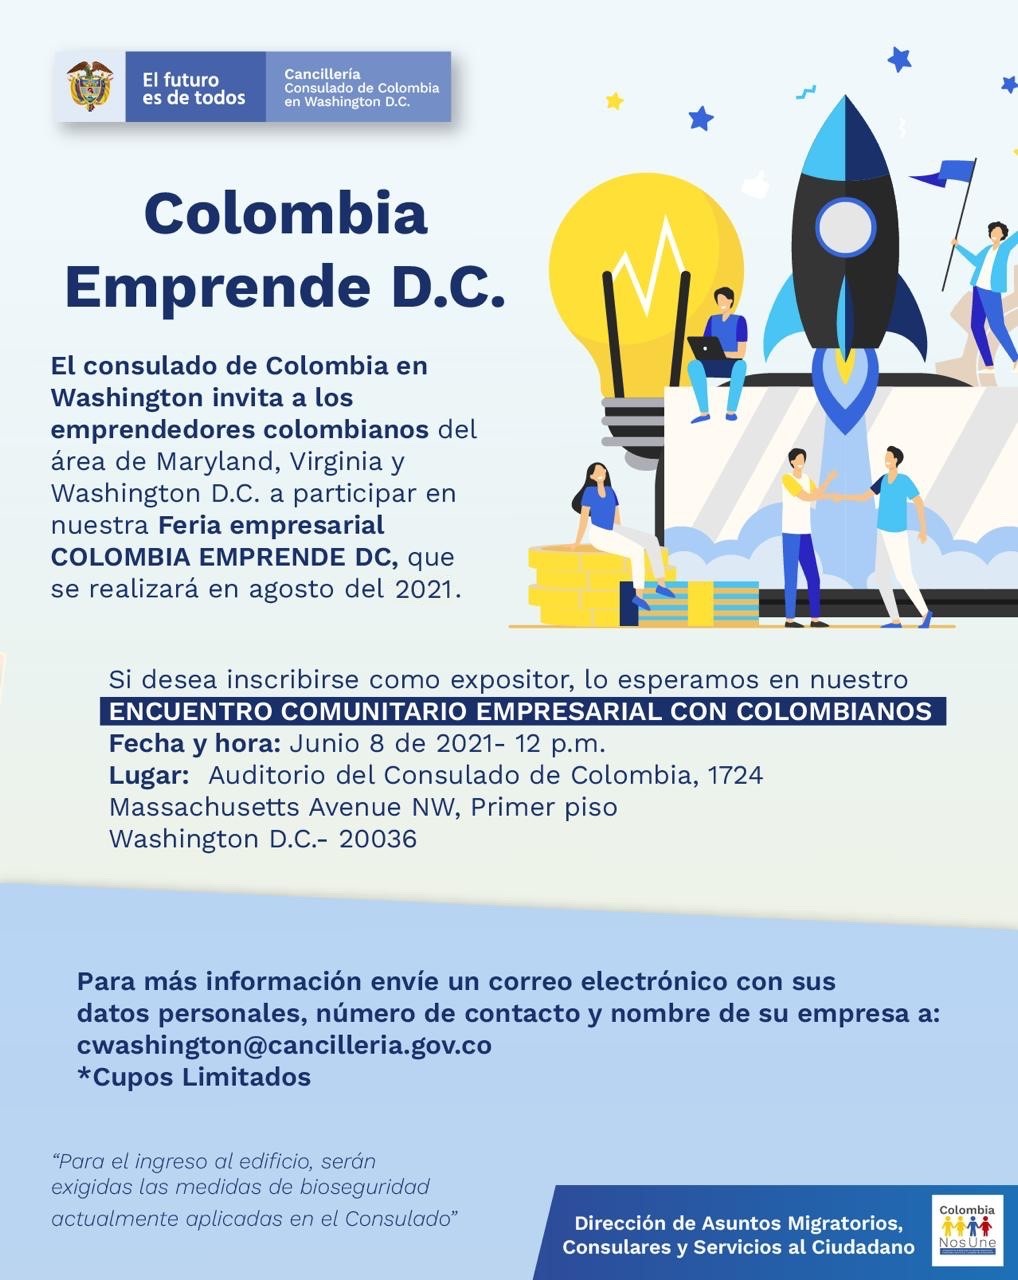 Consulado General de Colombia en Washington invita a la feria empresarial Colombia